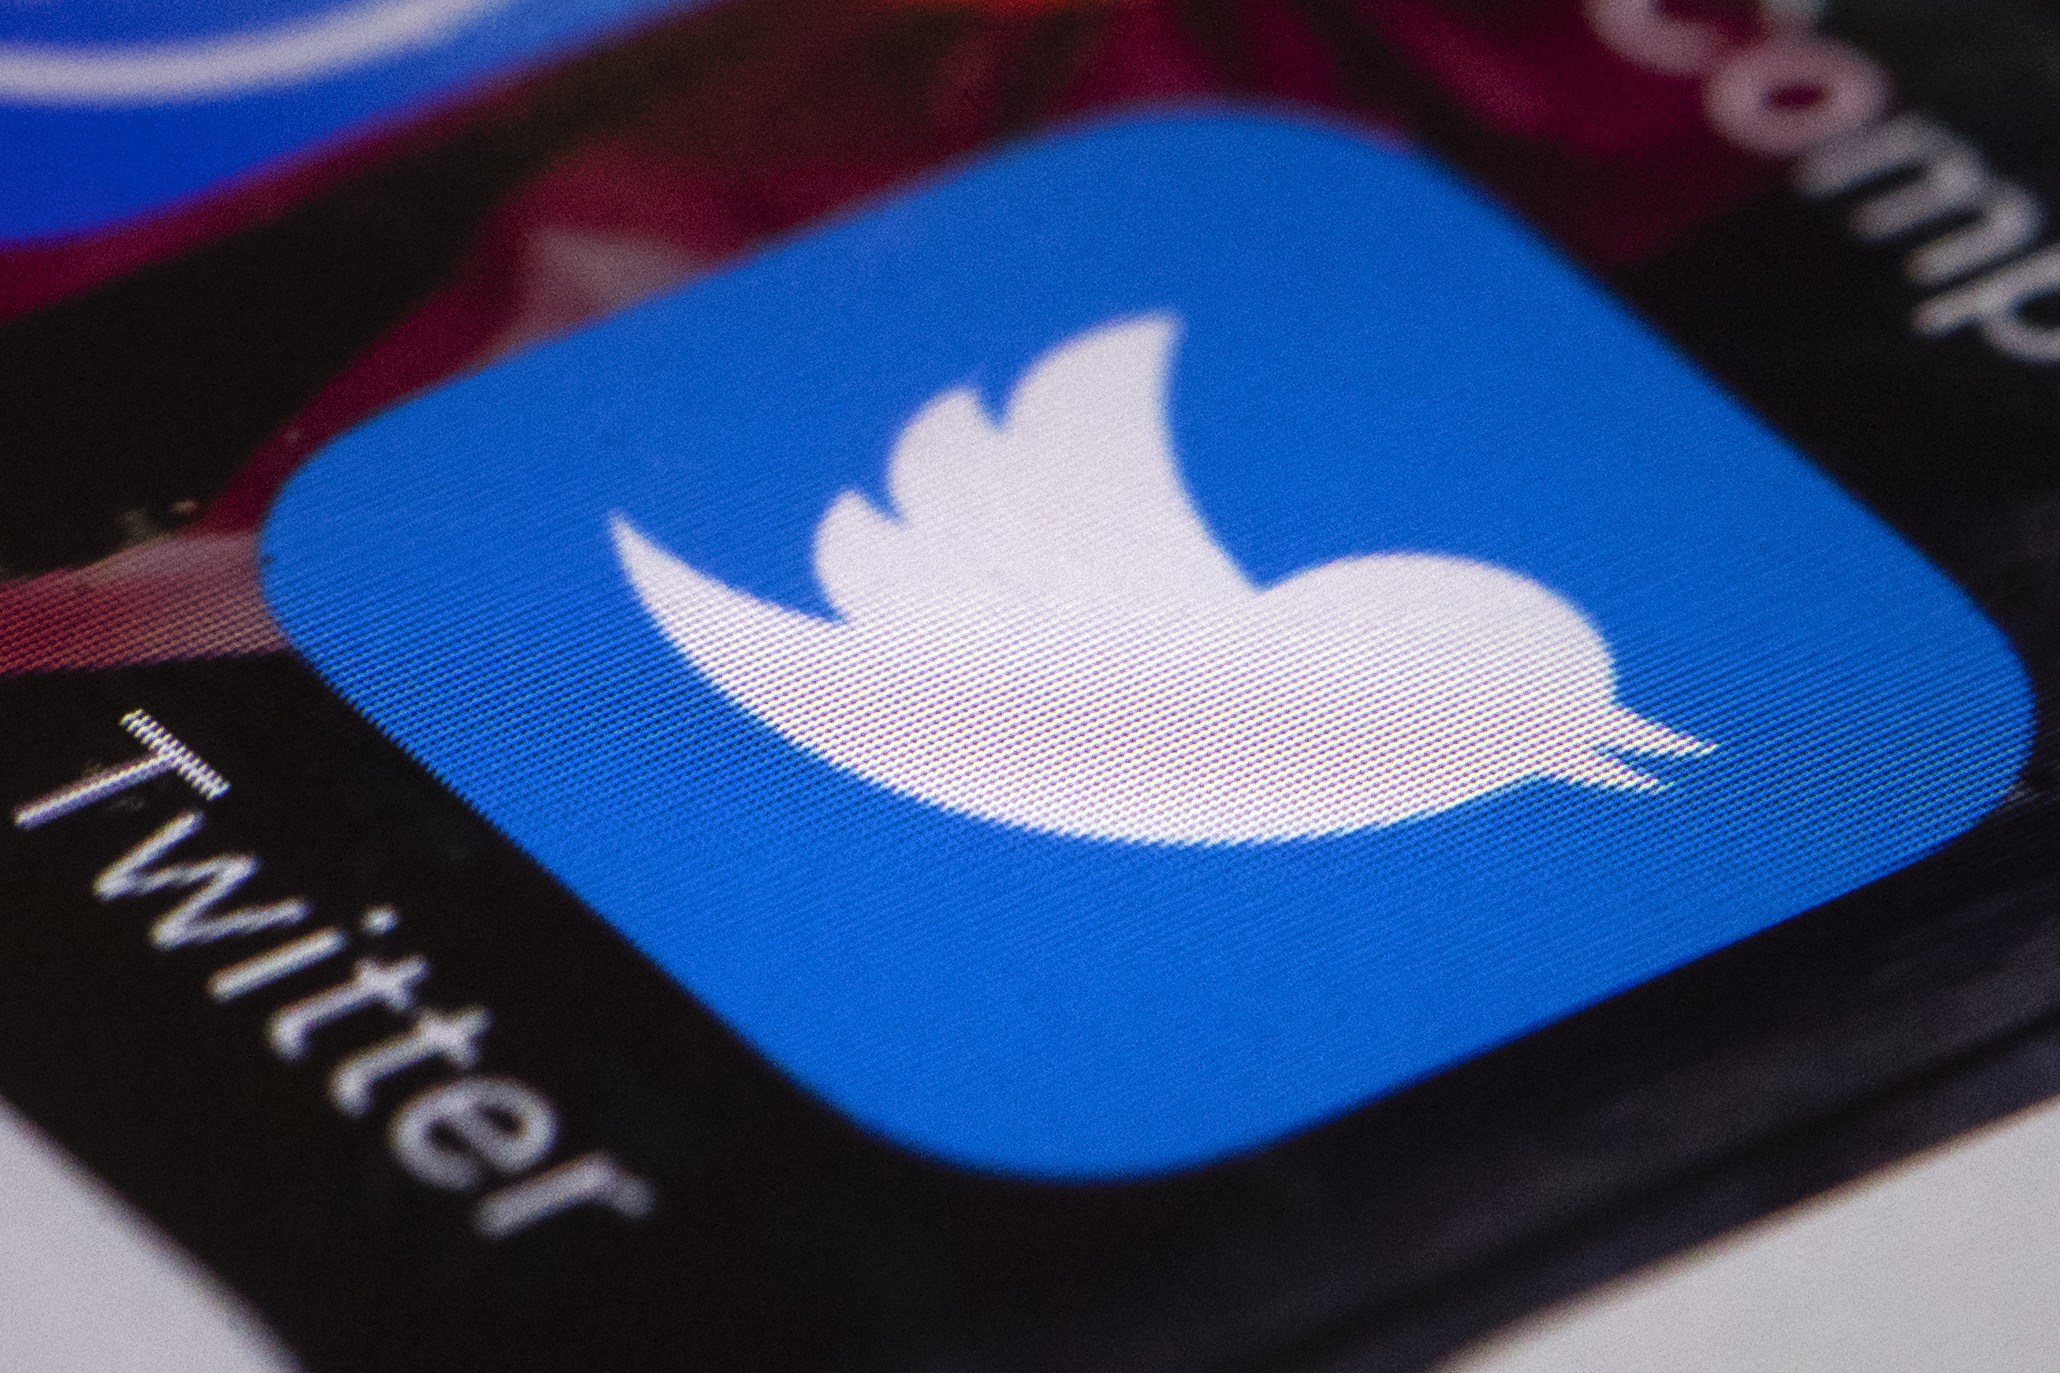 A Twitter 200 olyan fiókot talált, amelyet az oroszok azért hoztak létre, hogy befolyásolják az amerikai elnökválasztást